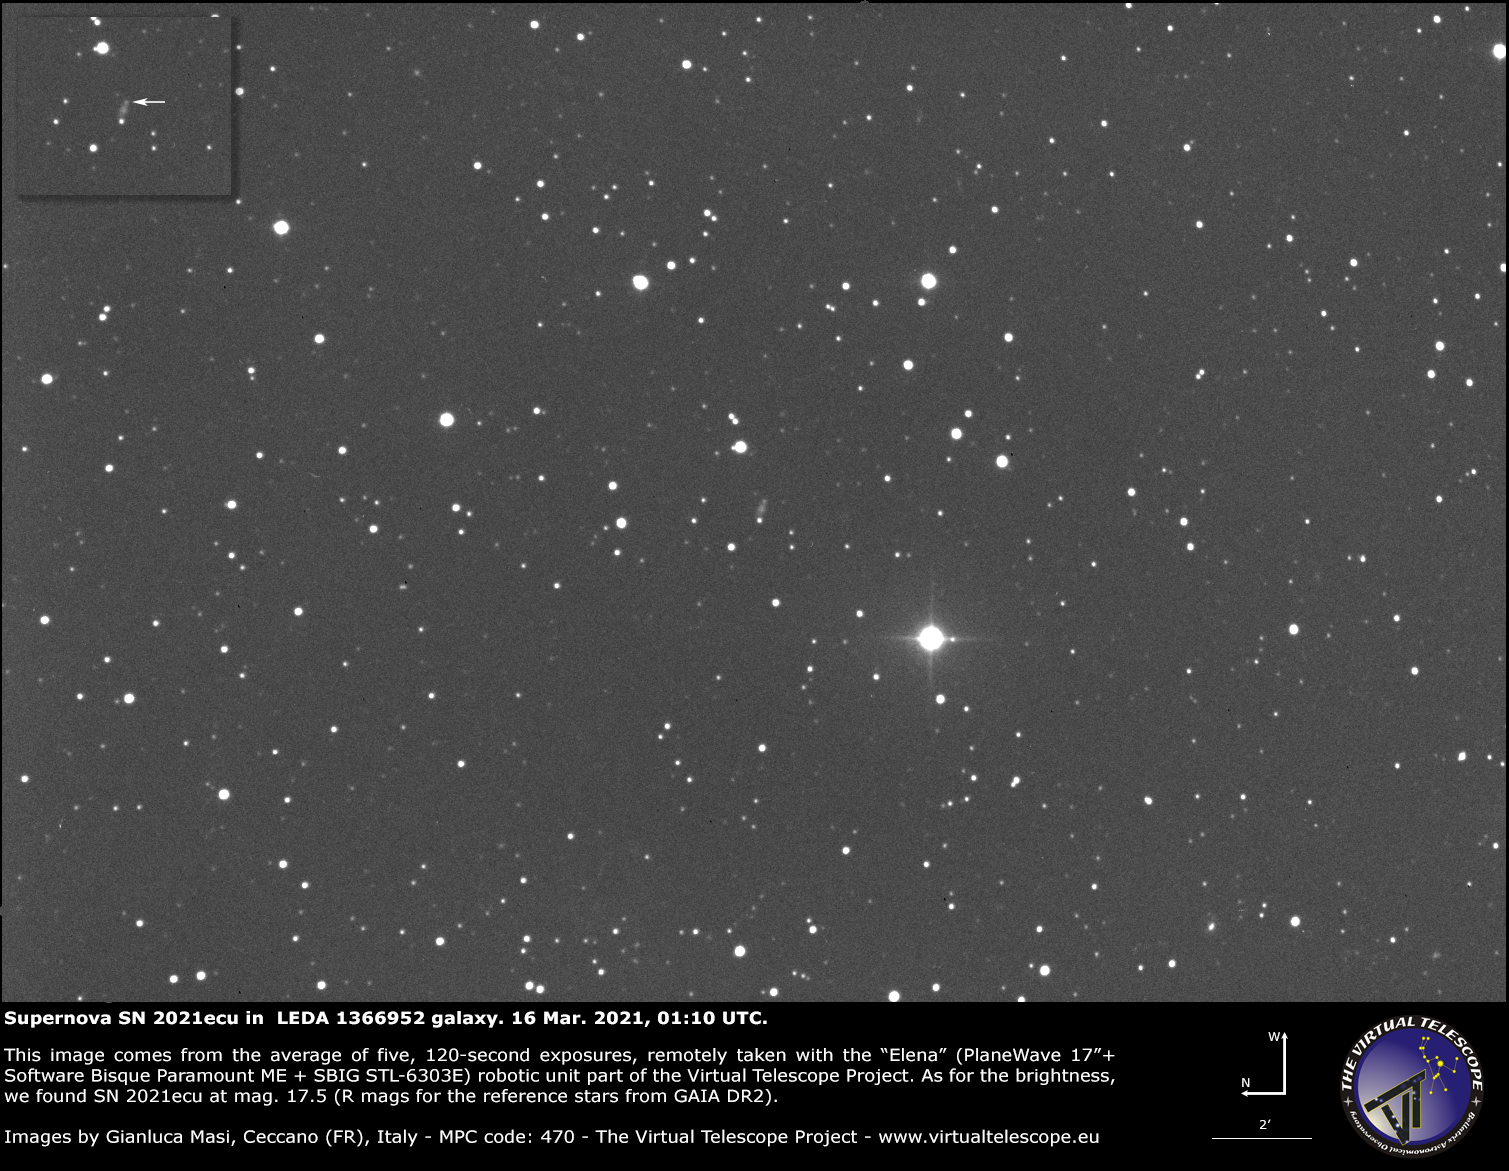 Supernova SN 2021ecu in LEDA 1366952 galaxy: 16 Mar. 2021.